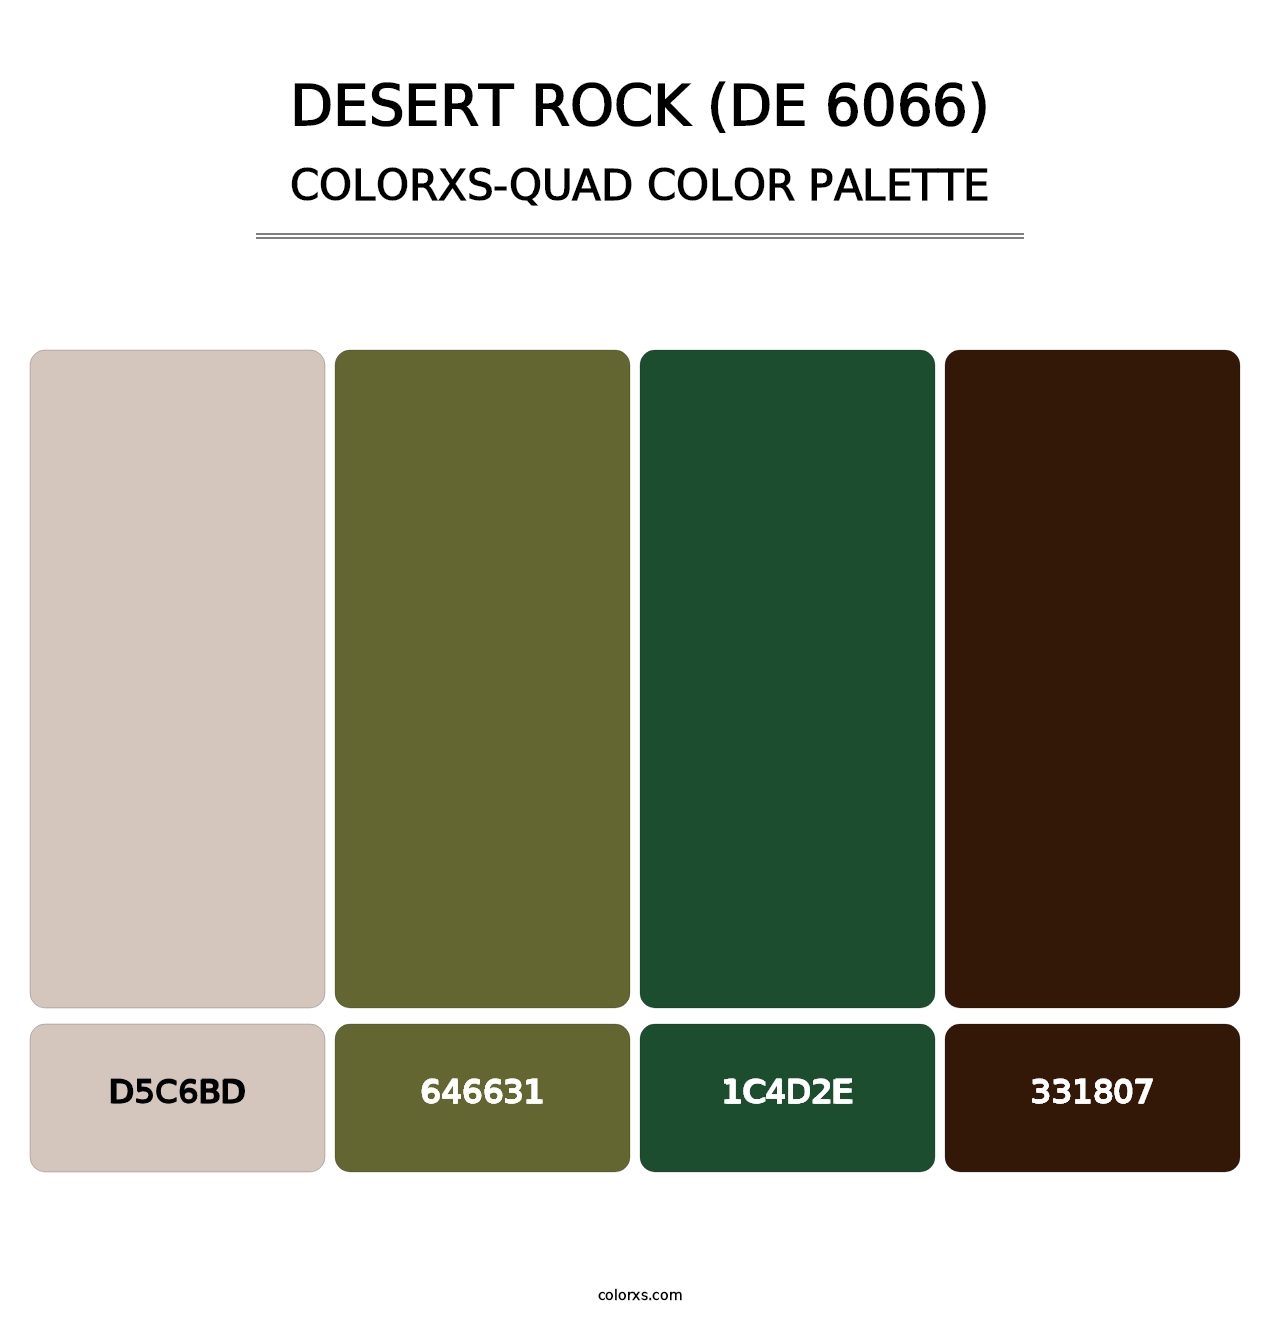 Desert Rock (DE 6066) - Colorxs Quad Palette